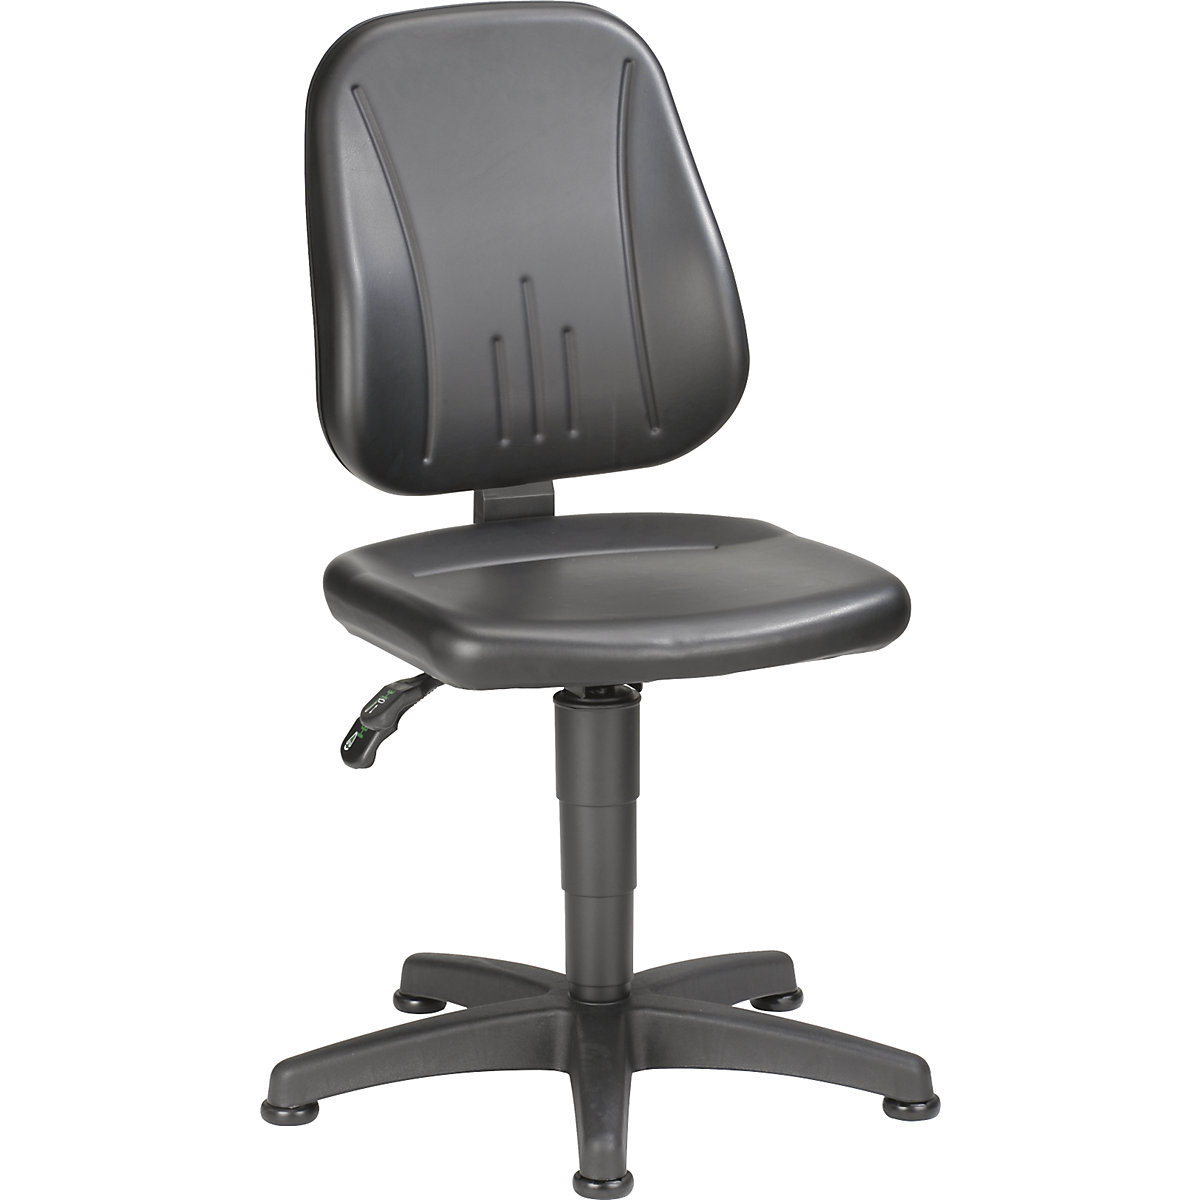 Okretni radni stolac – bimos, s namještanjem visine pomoću plinske opruge, presvlaka od umjetne kože, u crnoj boji, s podnim vodilicama-2